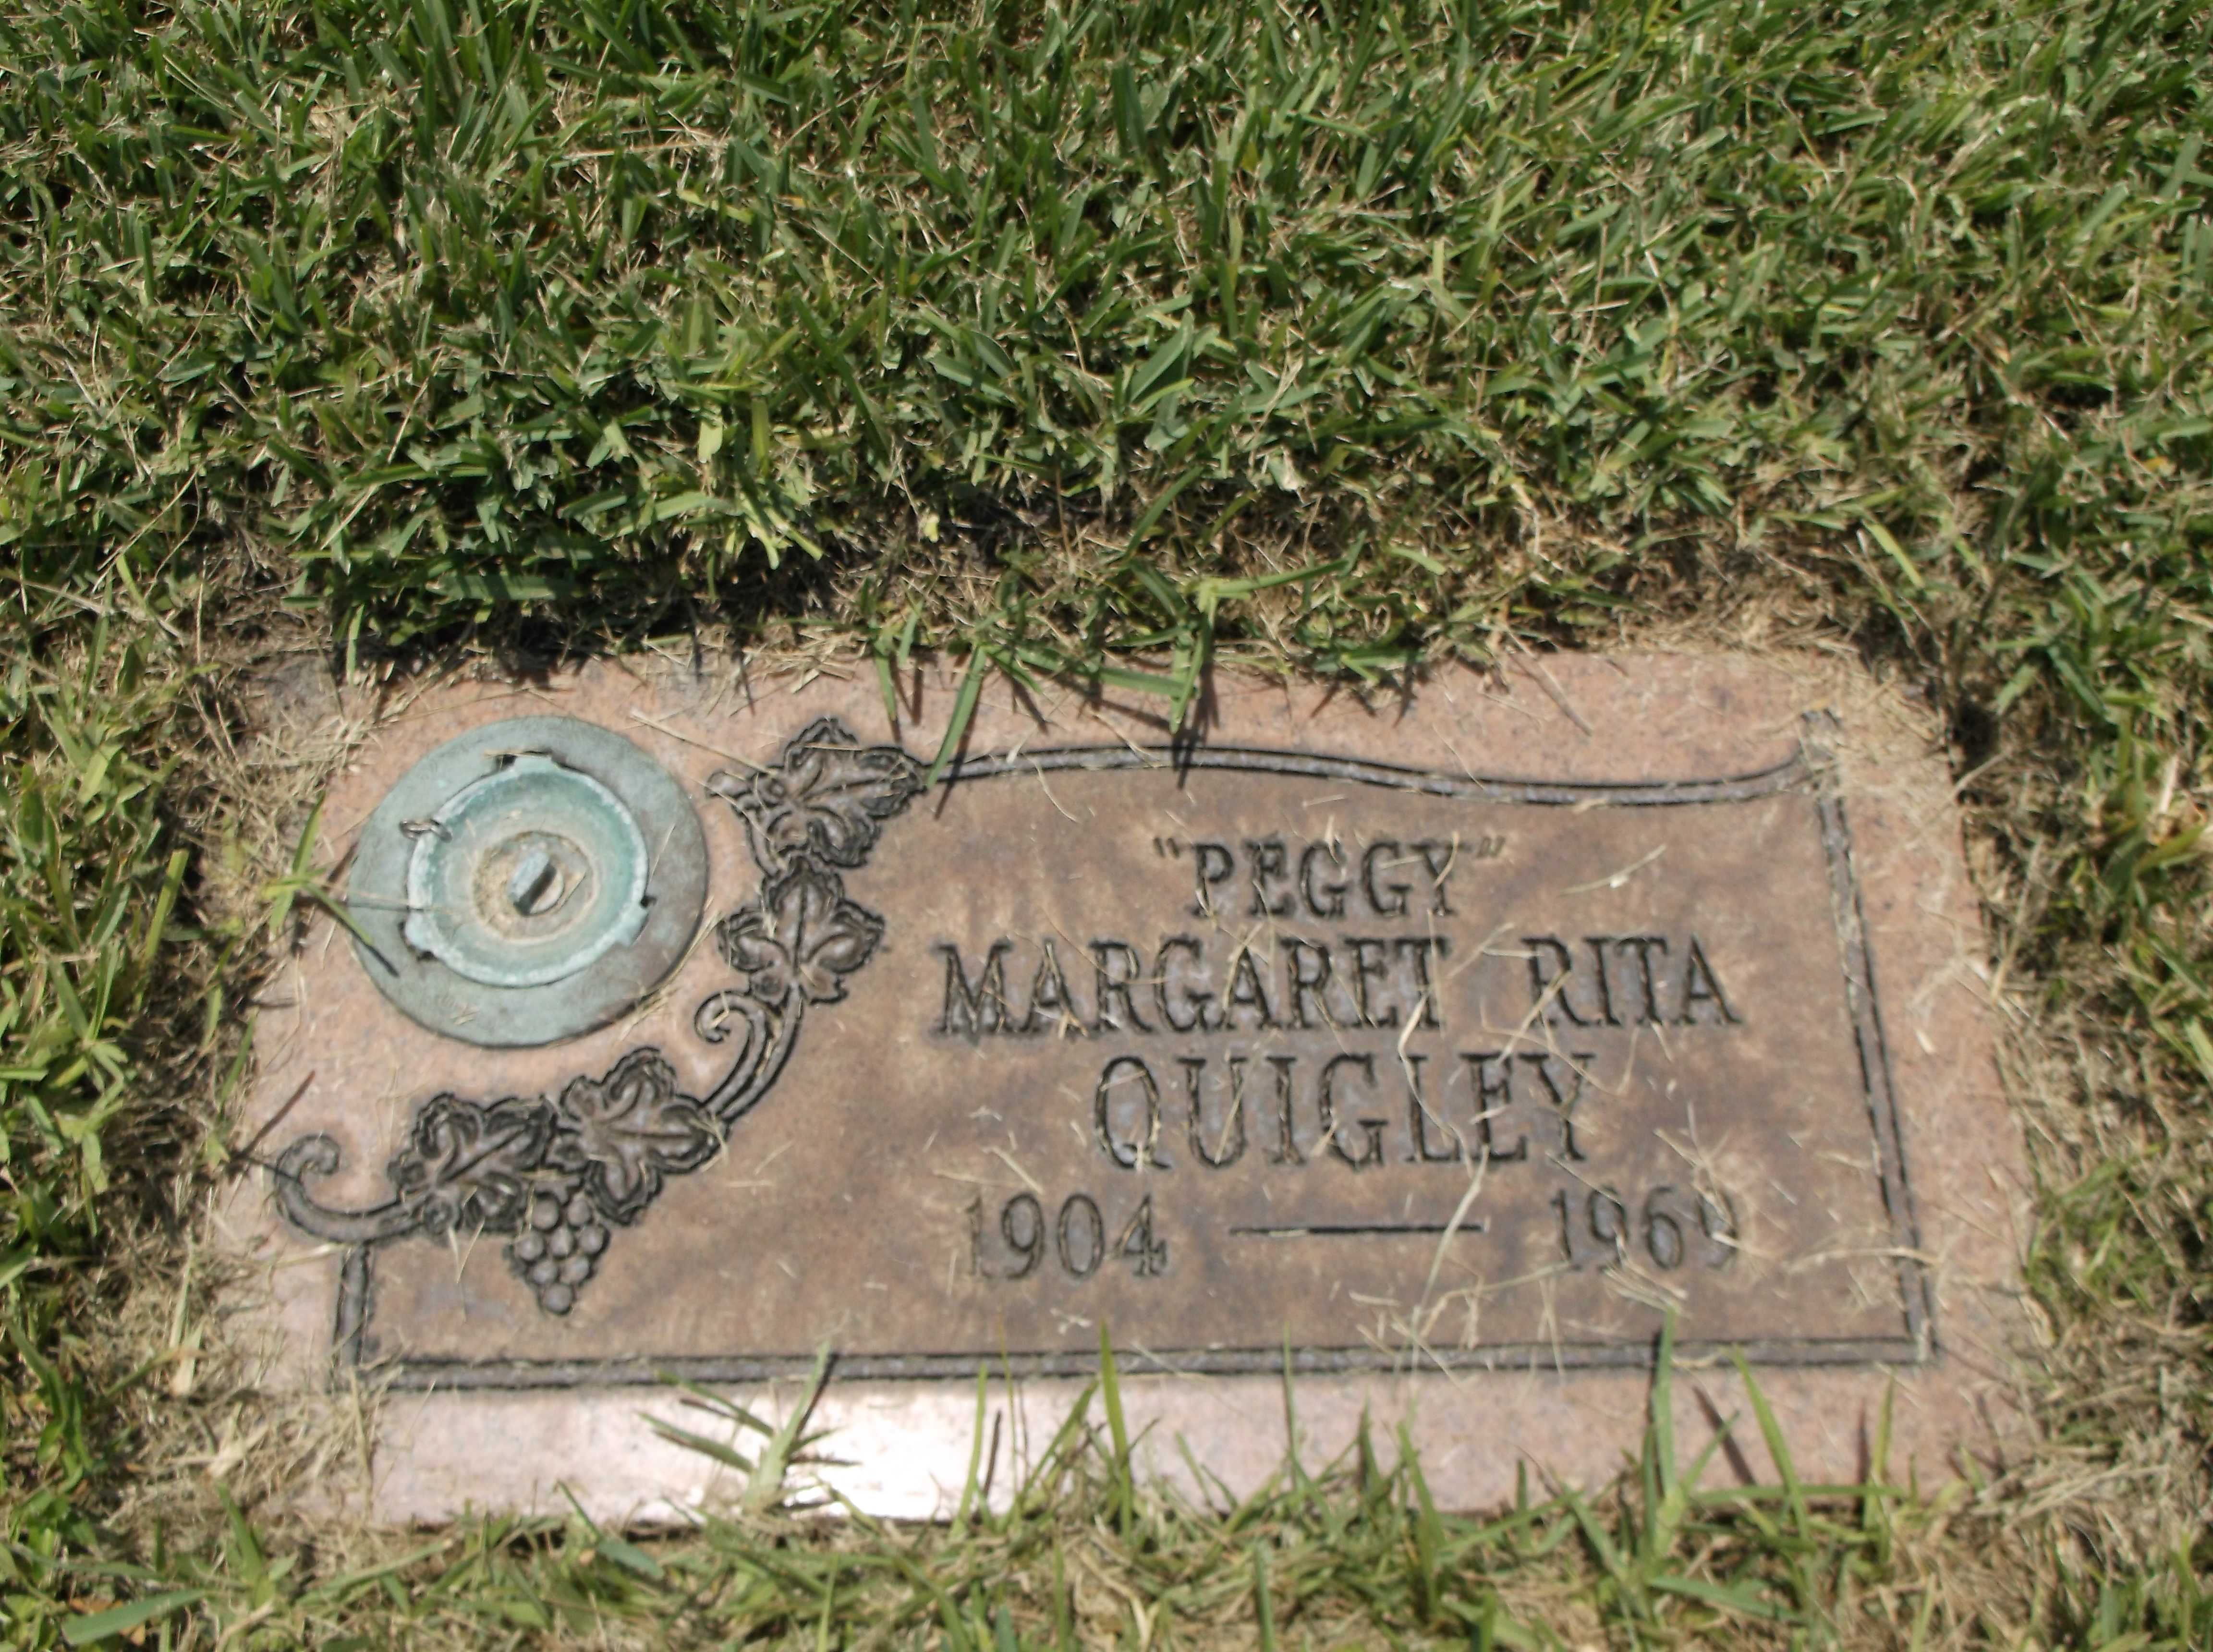 Margaret Rita "Peggy" Quigley